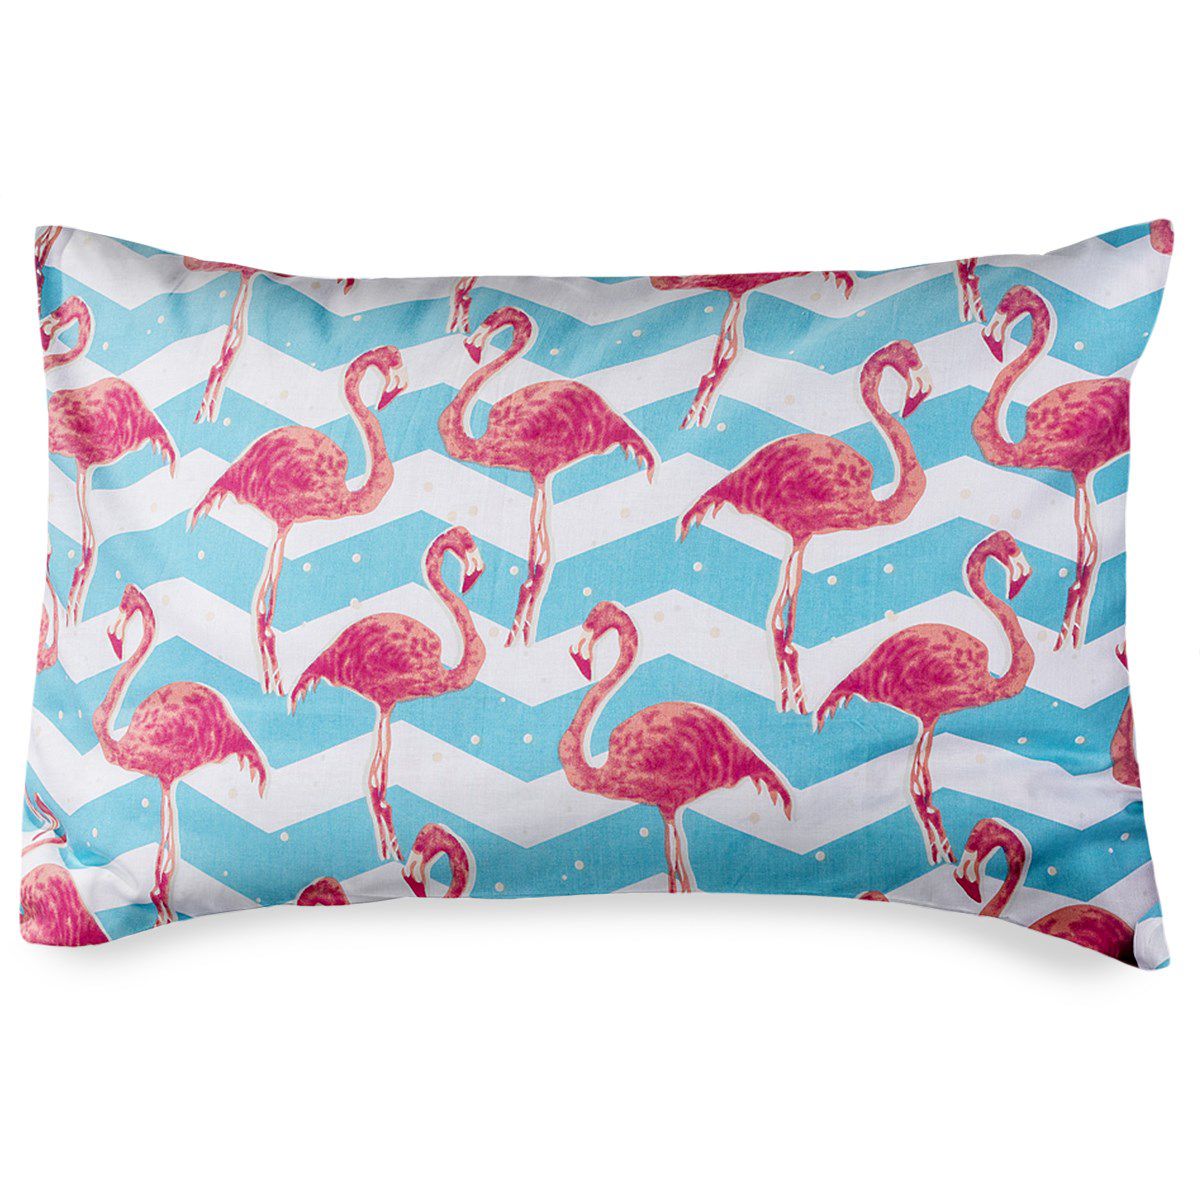 4Home Povlak na polštářek Flamingo, 50 x 70 cm, 50 x 70 cm - 4home.cz